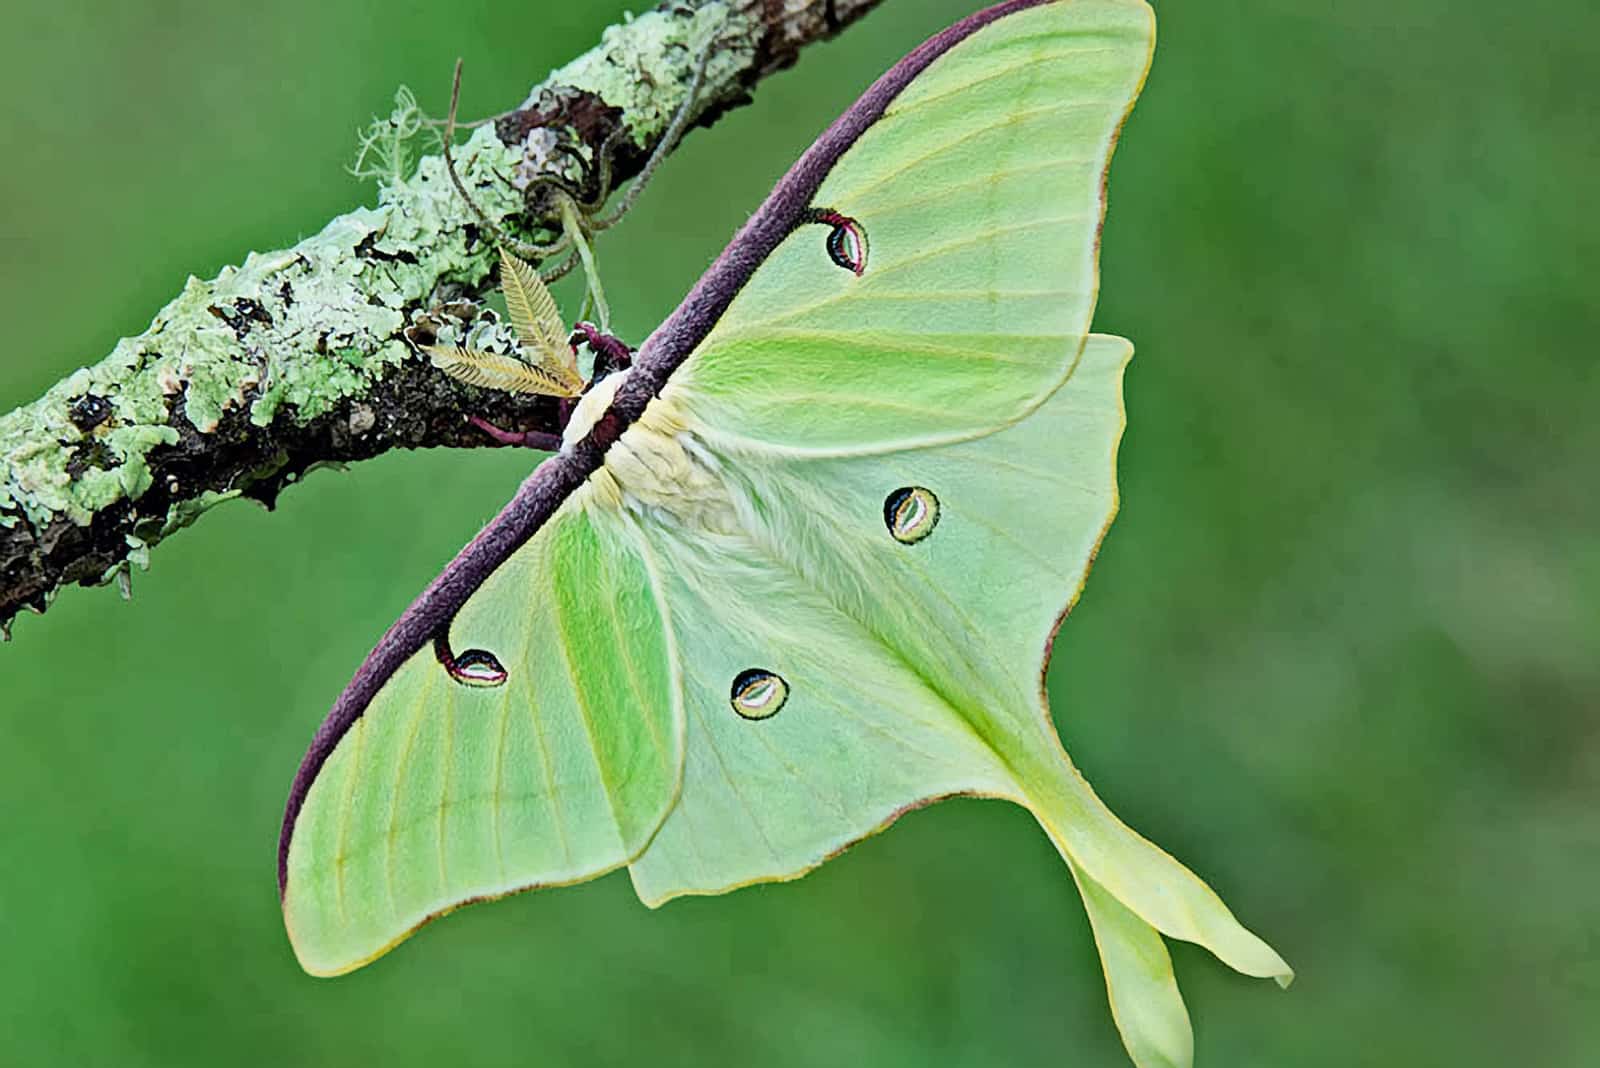 Luna Moth in nature